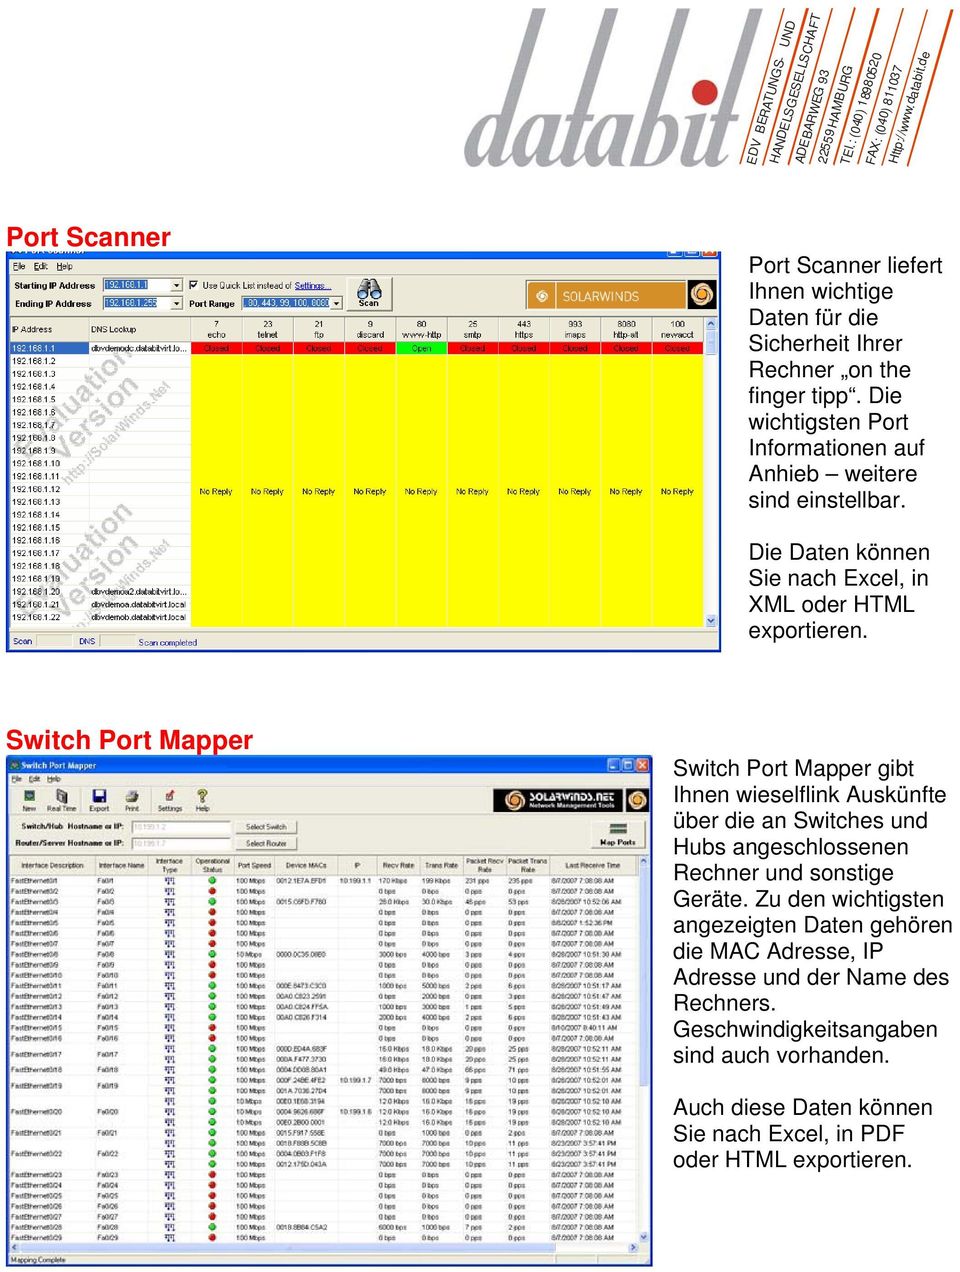 Switch Port Mapper Switch Port Mapper gibt Ihnen wieselflink Auskünfte über die an Switches und Hubs angeschlossenen Rechner und sonstige Geräte.